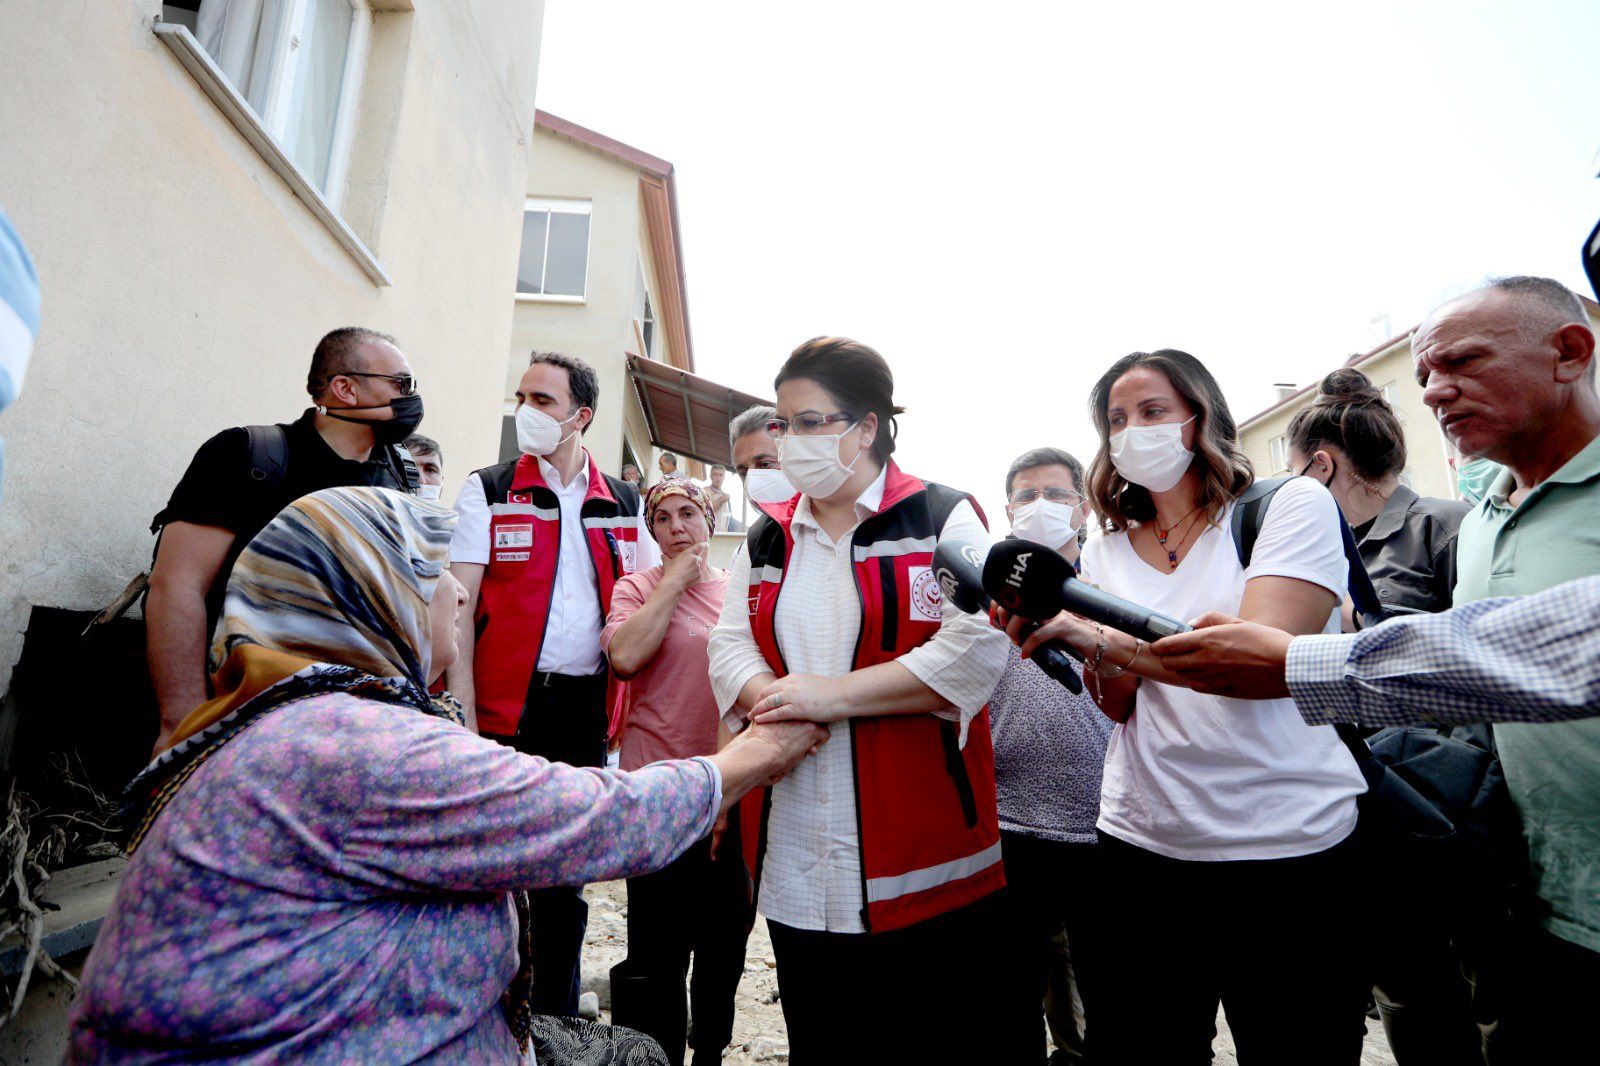 Bakanımız Derya Yanık: “Sinop'a 13 Milyon Lira Nakdi Yardım Göndermiştik. İhtiyaç Oldukça Nakdi Yardımlara Devam Edeceğiz" 